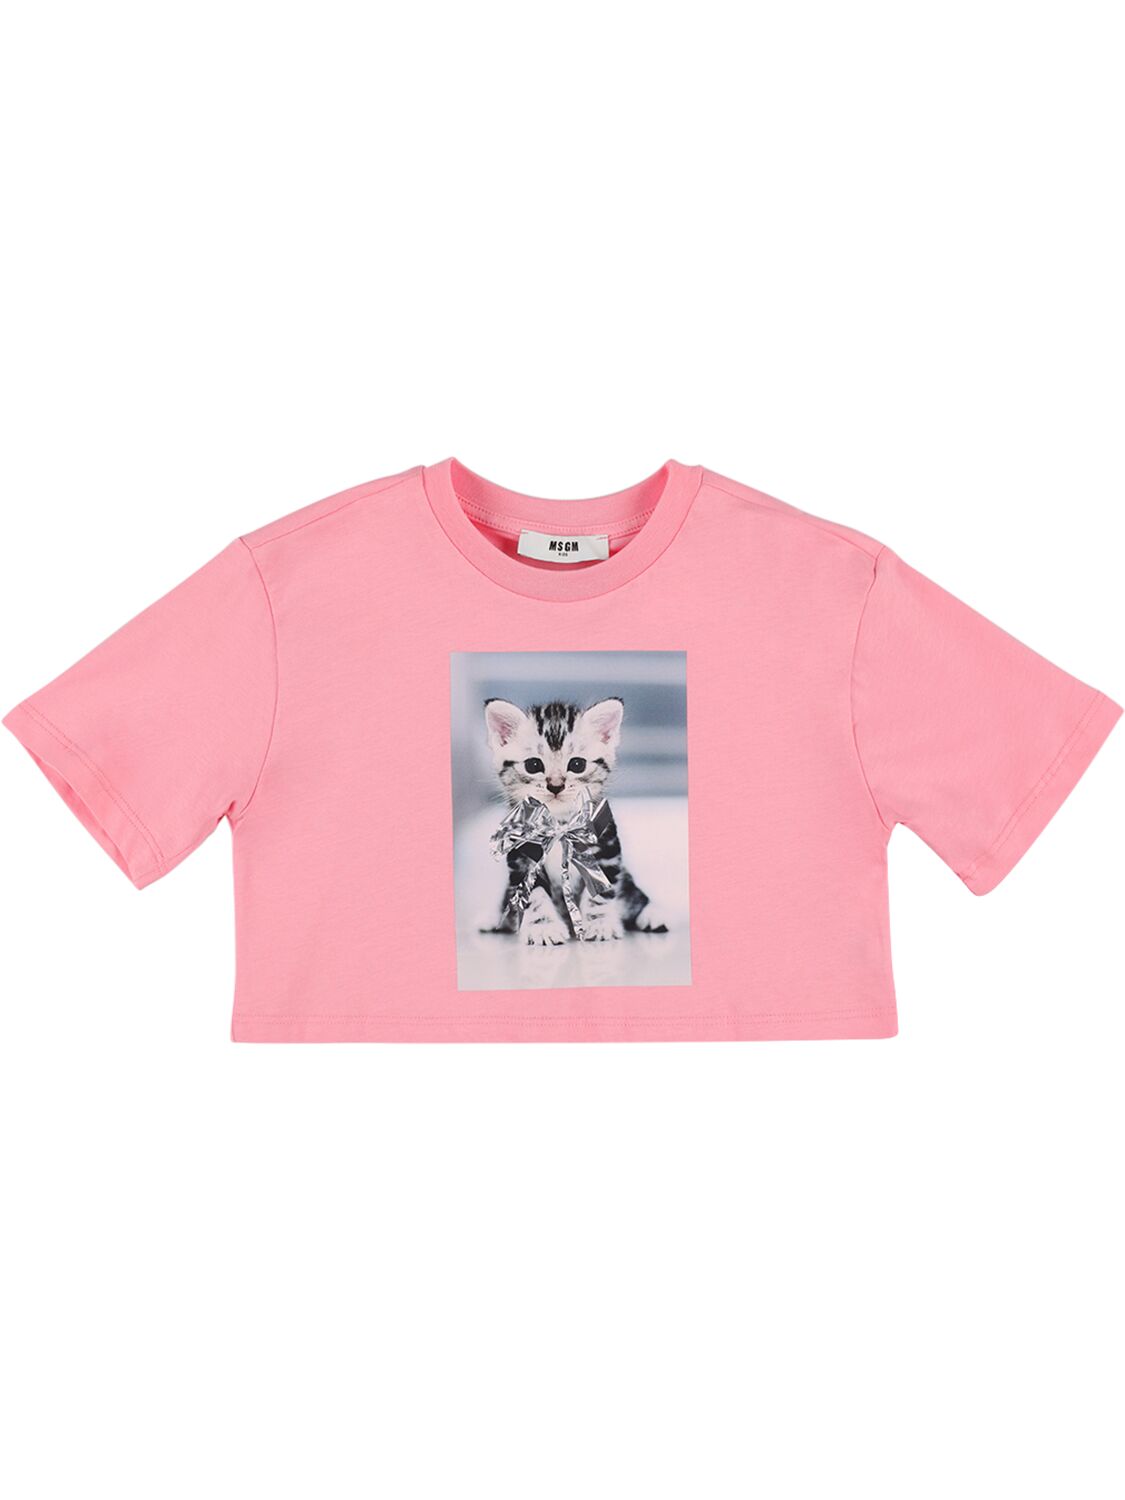 Msgm Kids' 印花棉质平纹针织短款t恤 In Pink